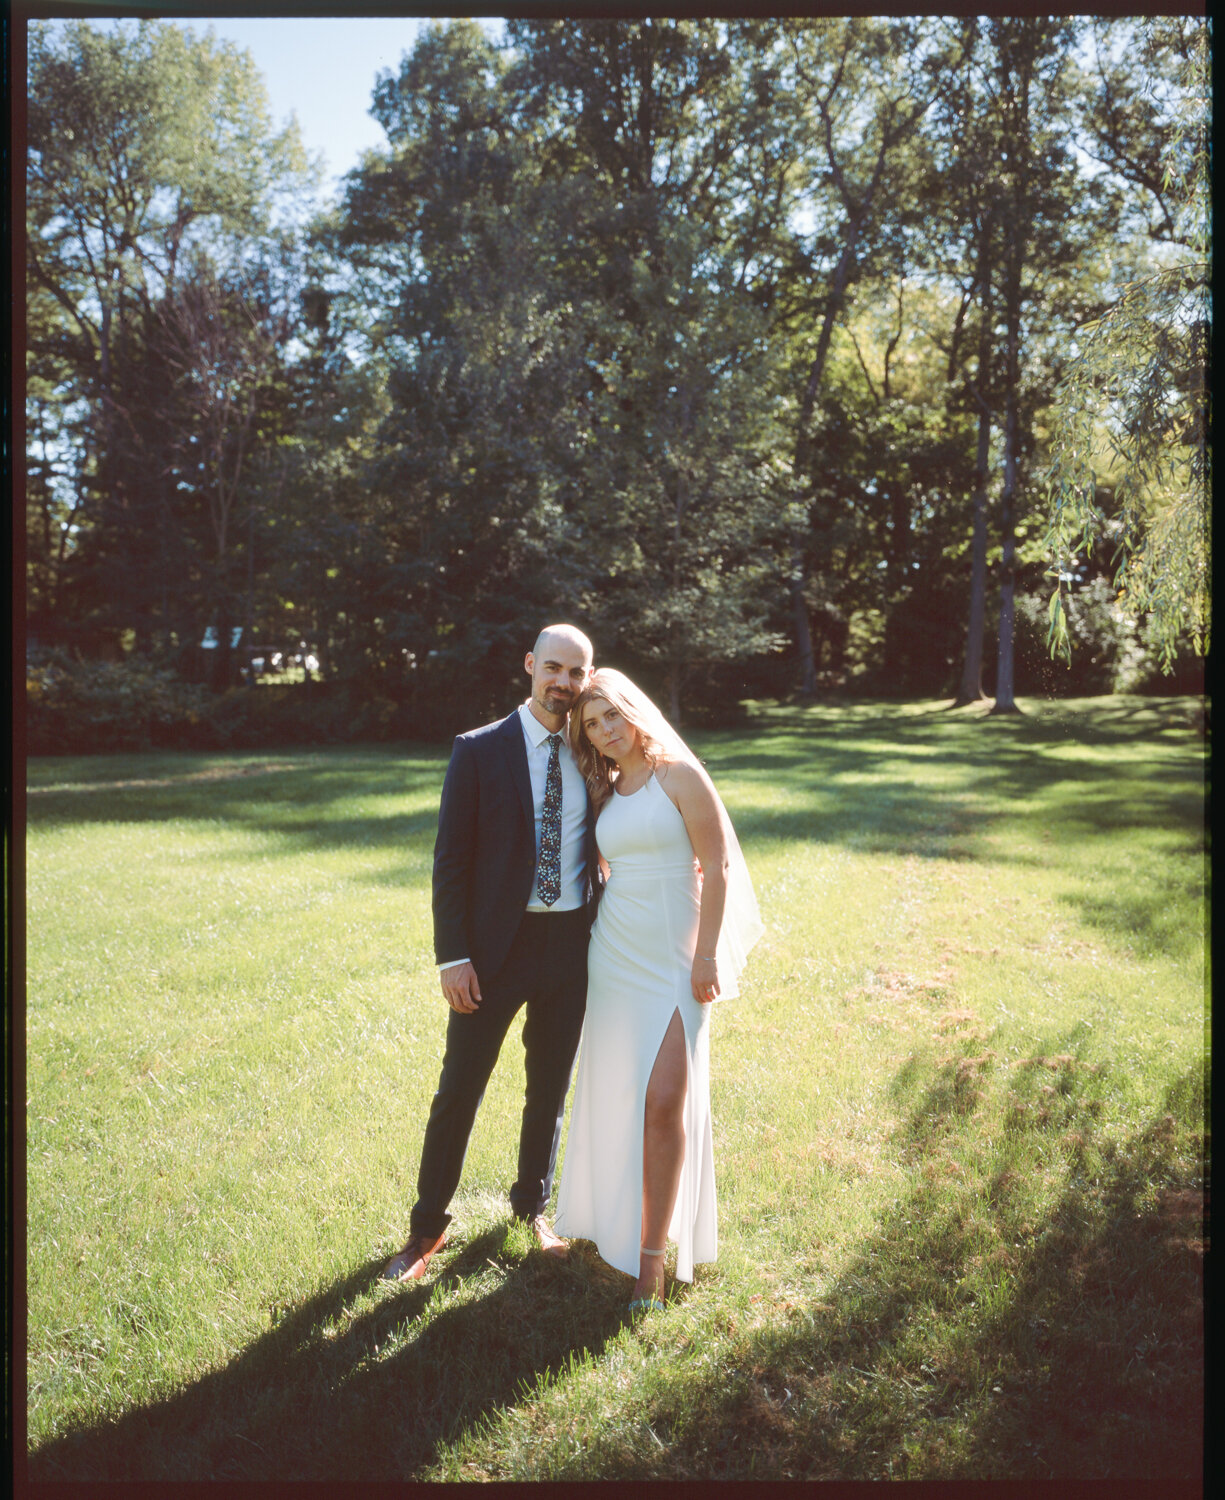 Analog-Film-Micro-Wedding-Photos-Inspiration-Backyard-Toronto-Ontario-71.JPG